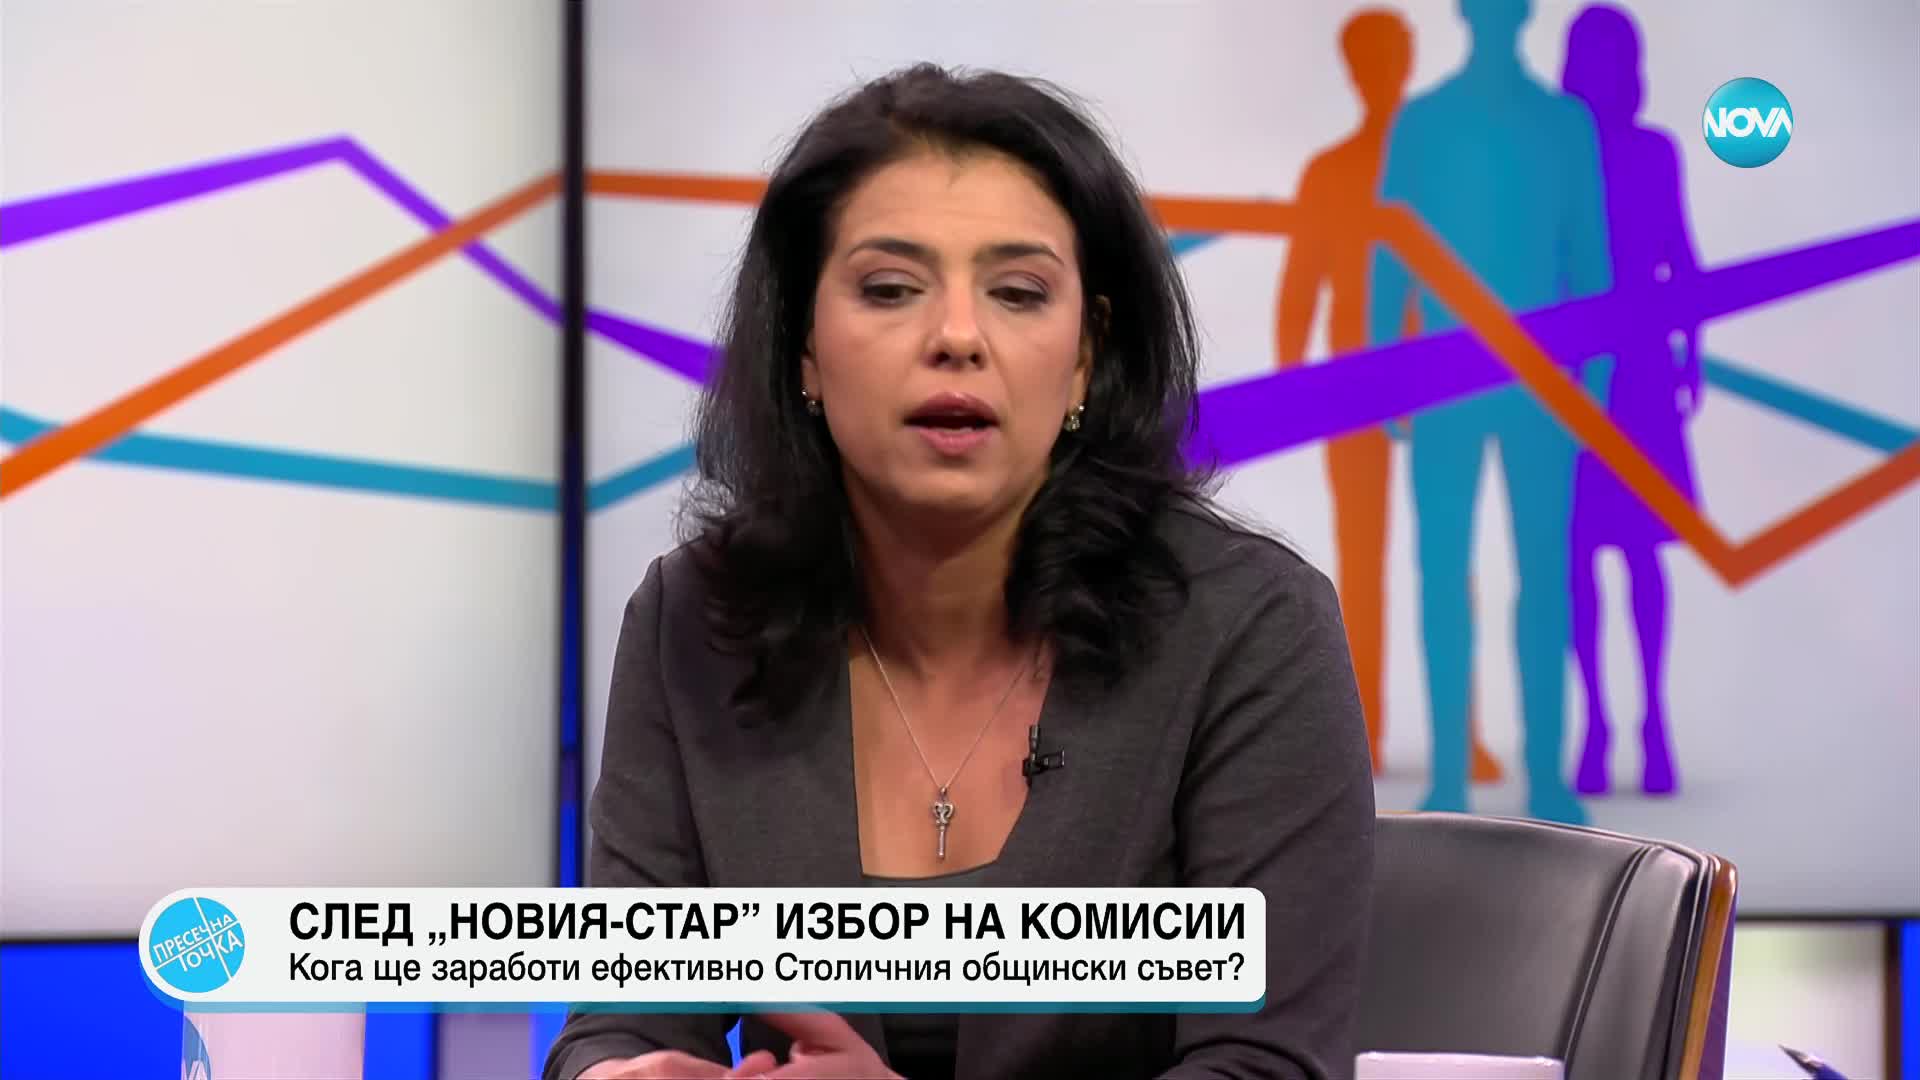 Григорова: Аз не съм общински съветник на никоя партия, защото съм безпартийна